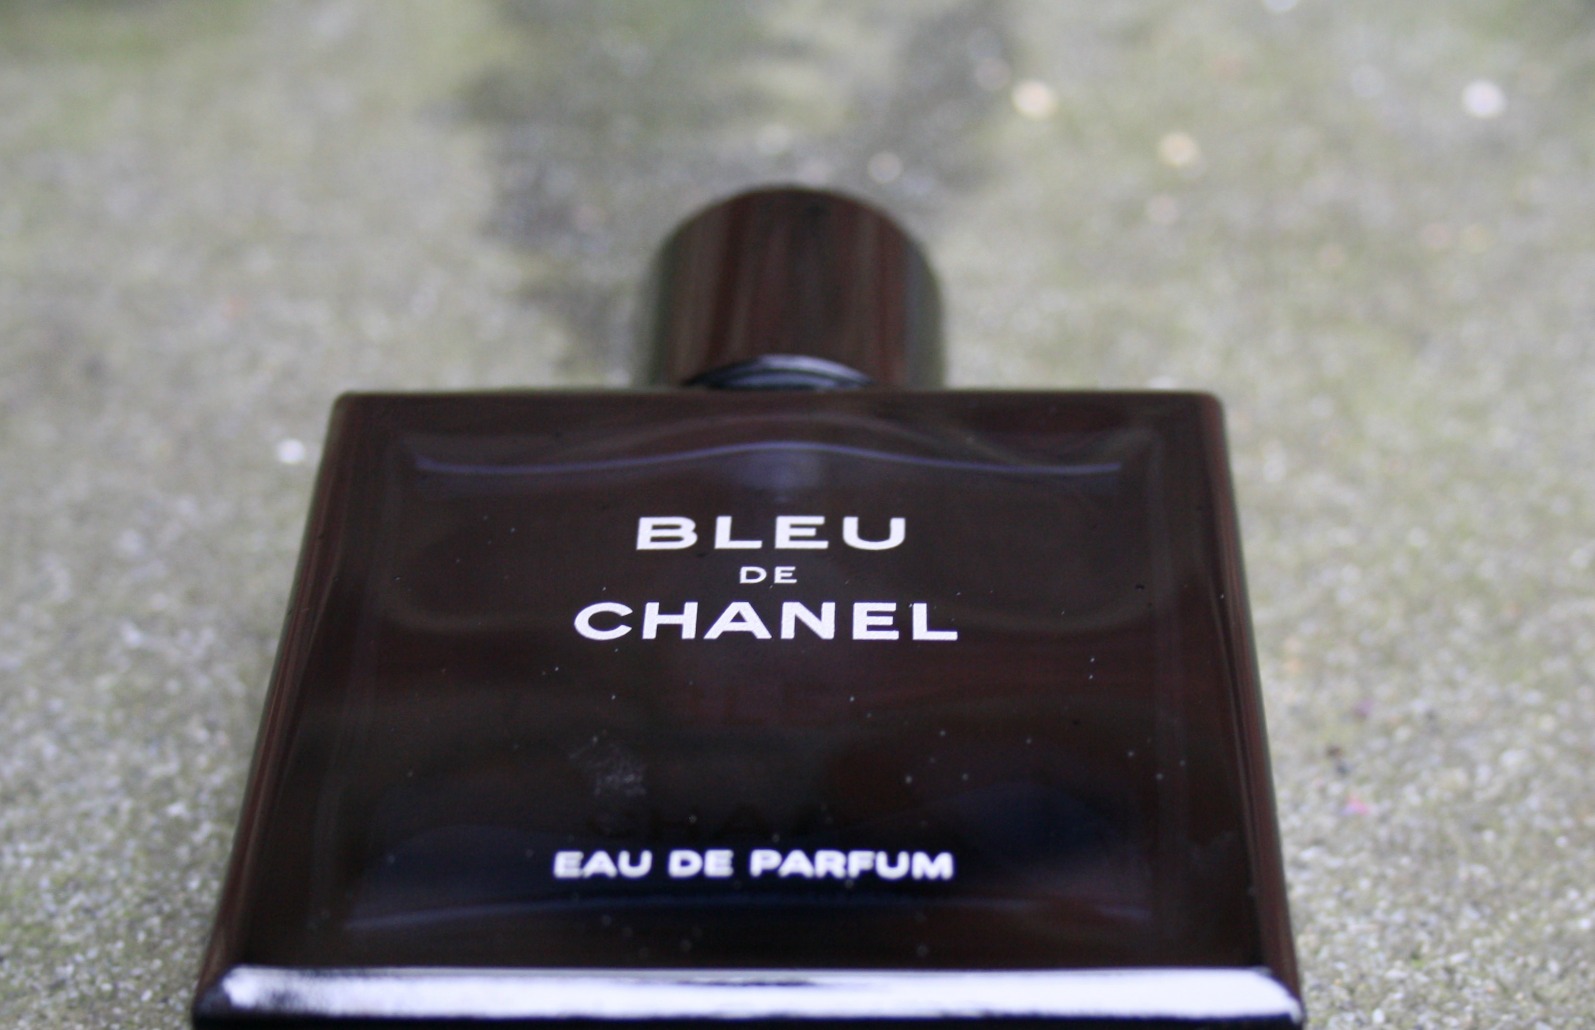 Bleu De Chanel Eau de Parfum